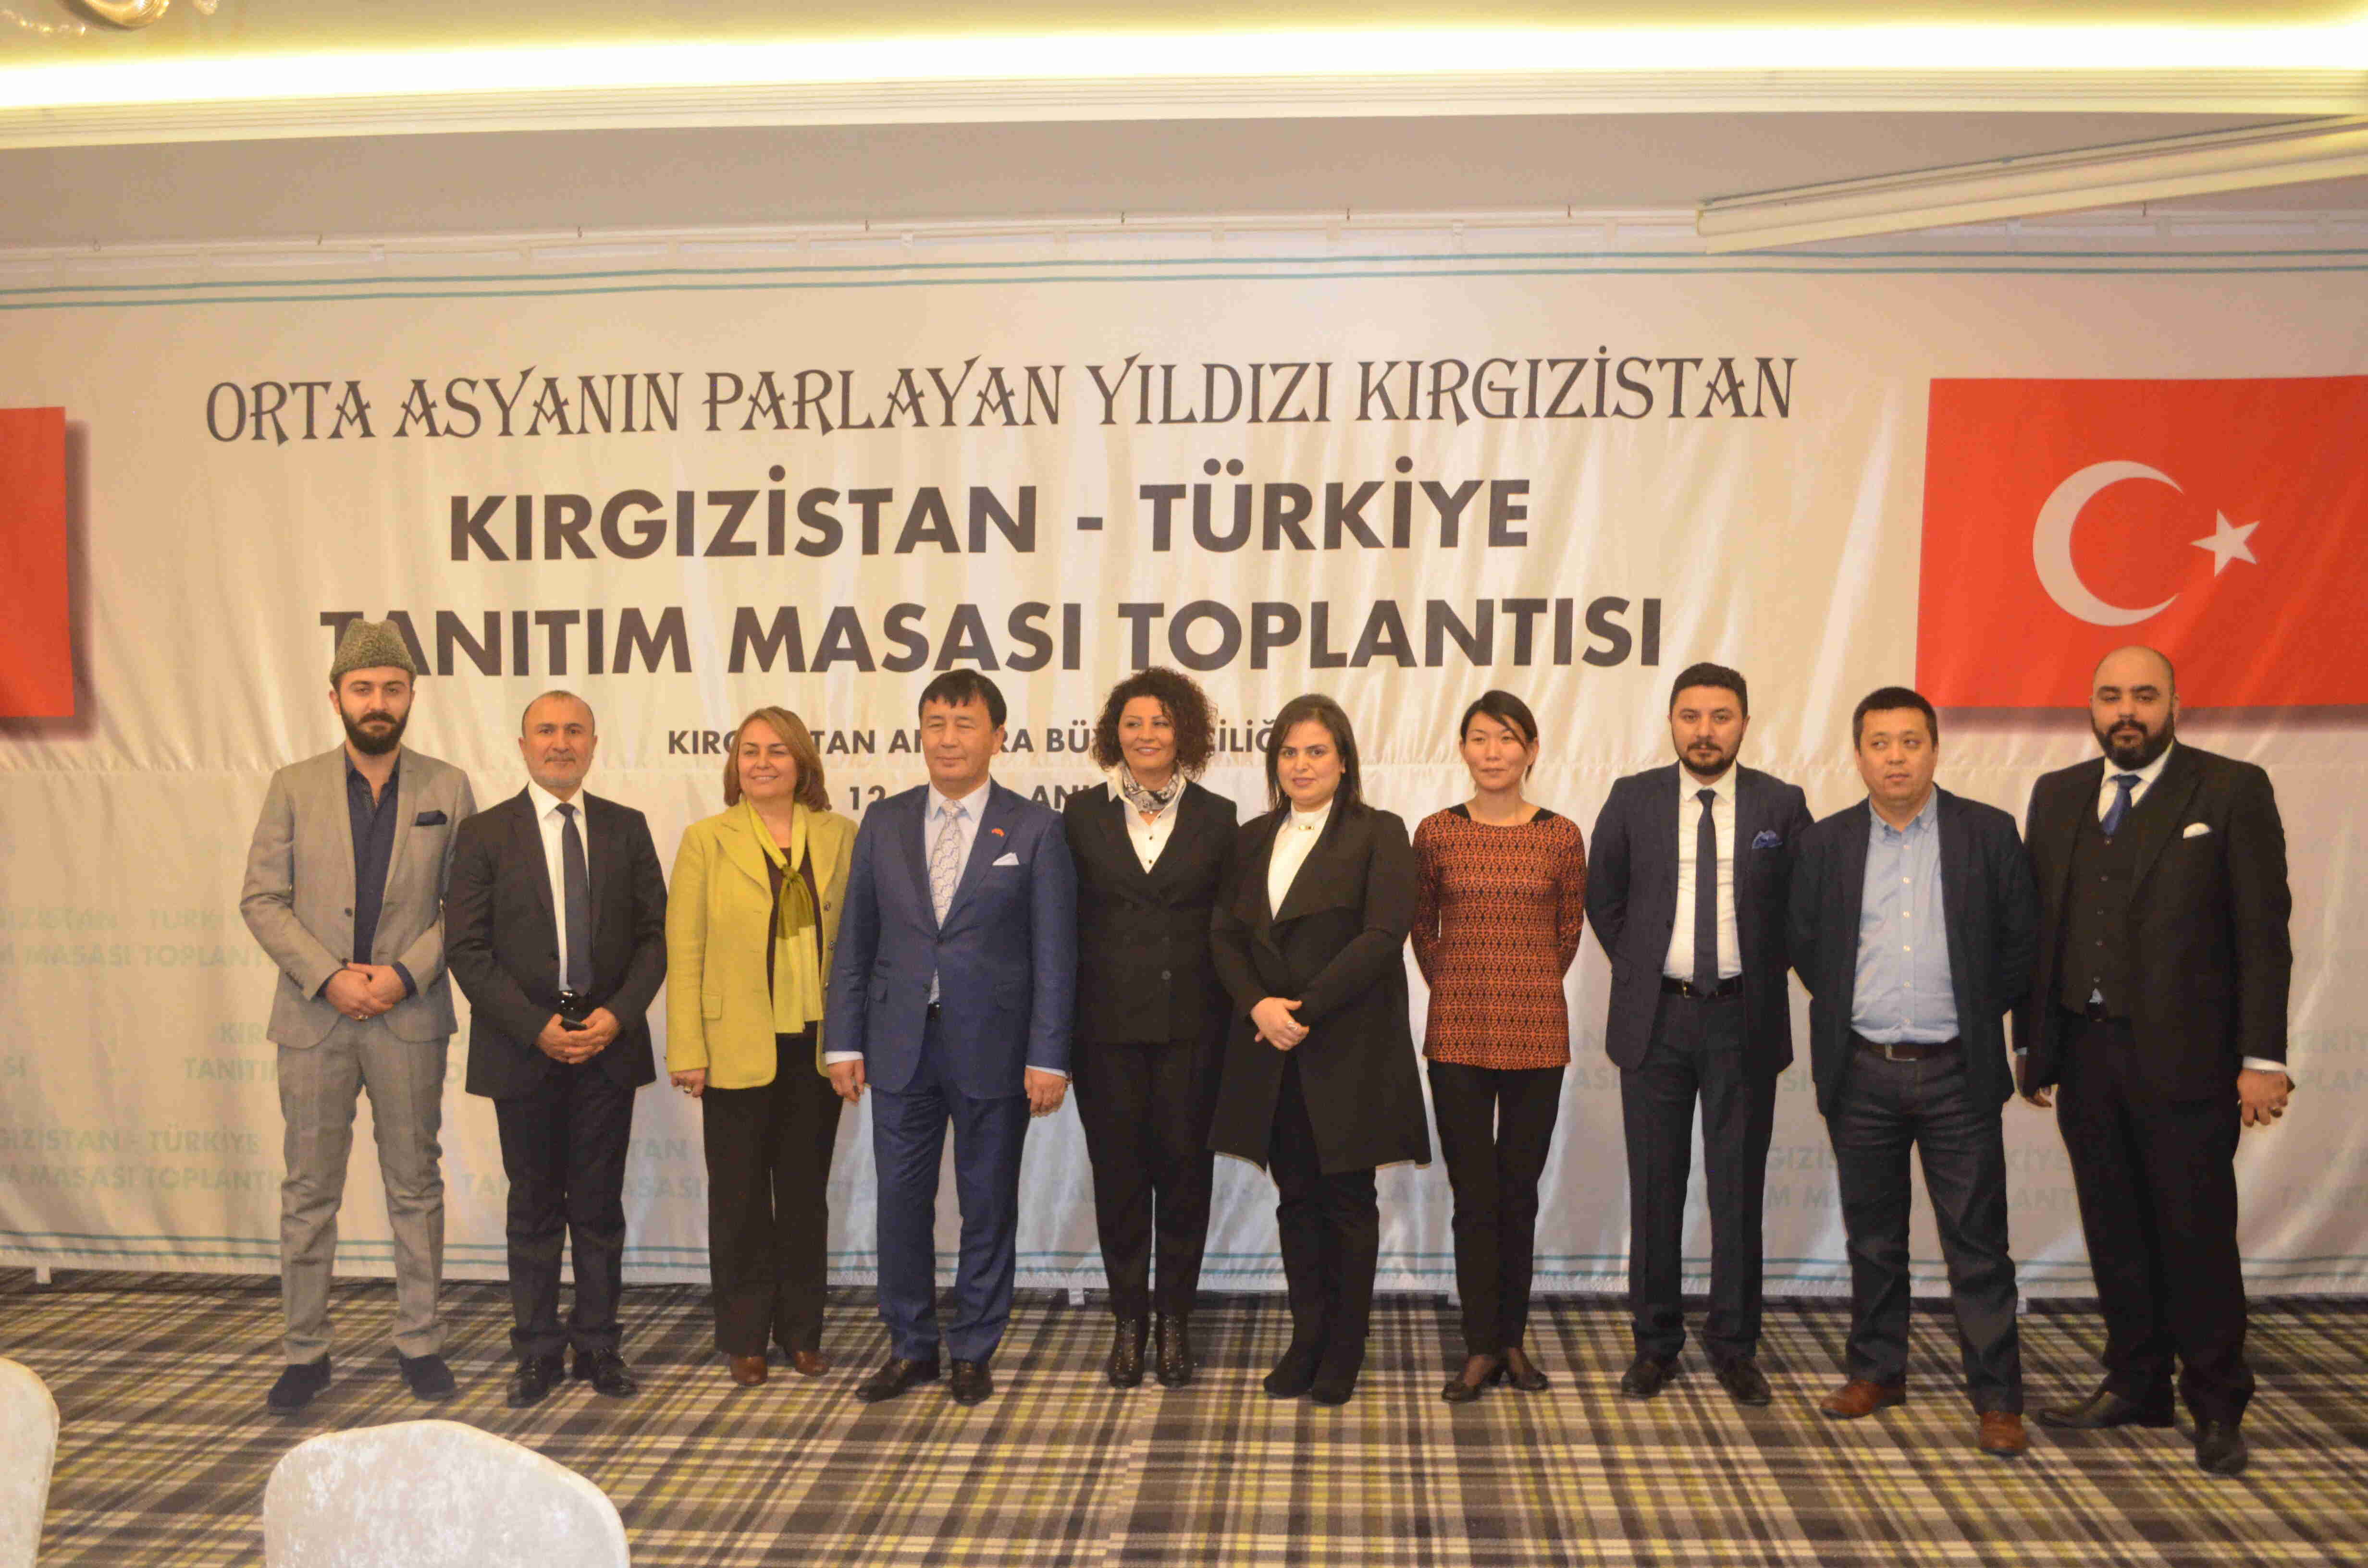 Kırgızistan-Türkiye tanıtım masa toplantısı Anakarada  gerçekleşti..  